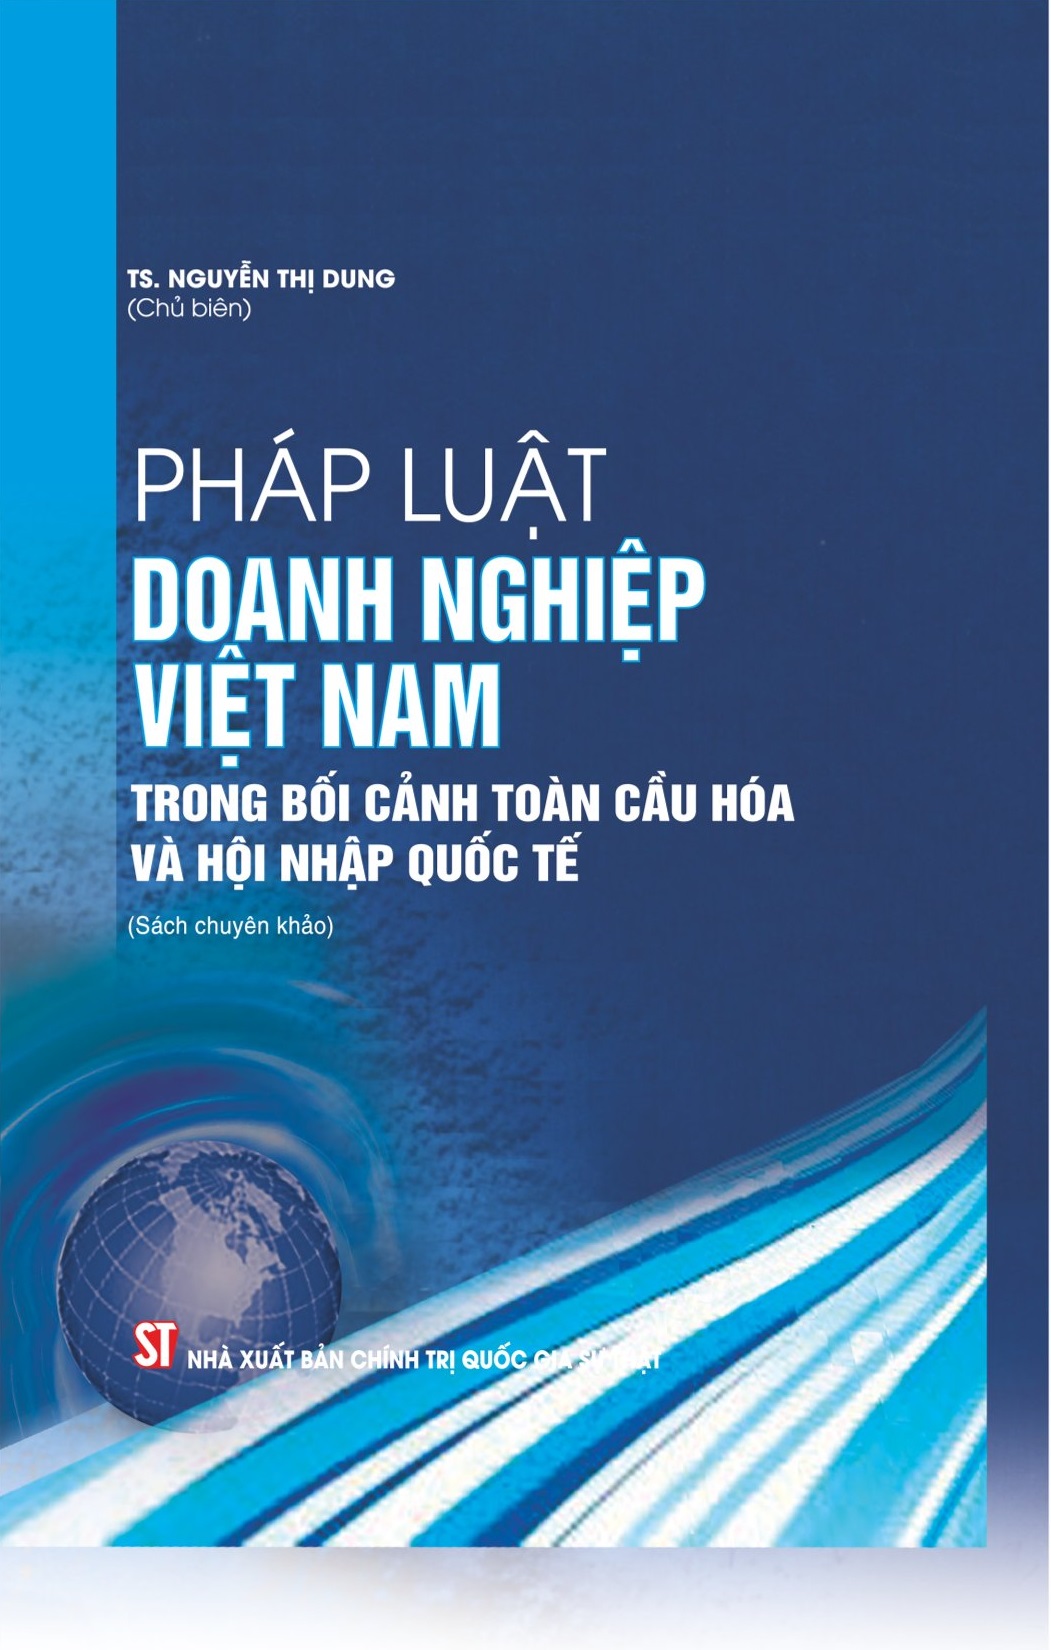 Pháp luật doanh nghiệp Việt Nam trong bối cảnh toàn cầu hóa và hội nhập quốc tế